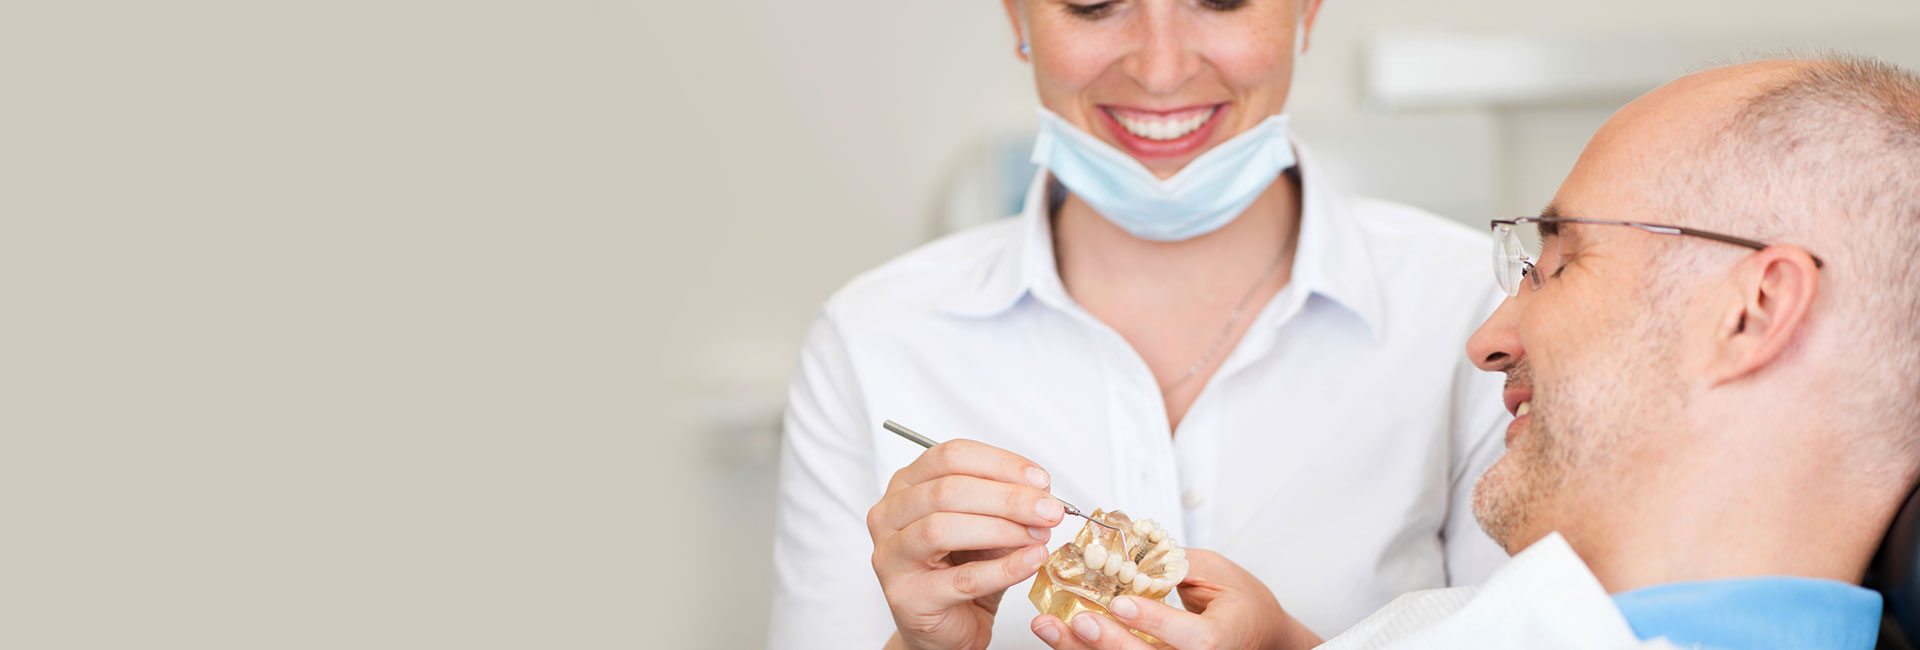 Dentist Explaining Ceramic implant